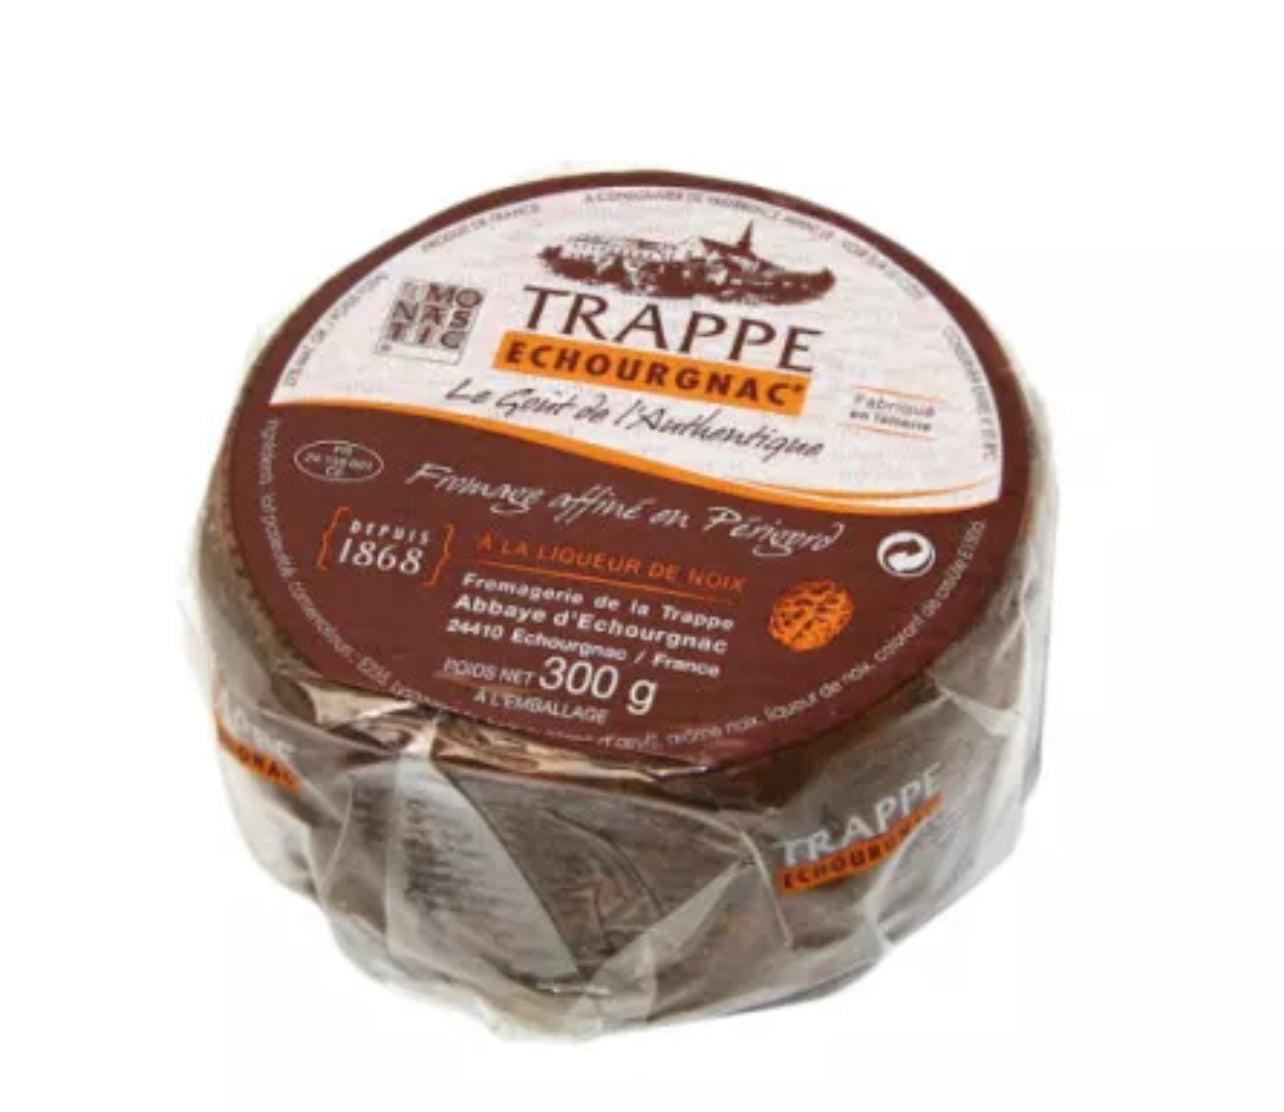 Trappe Échourgnac with walnuts - 300g